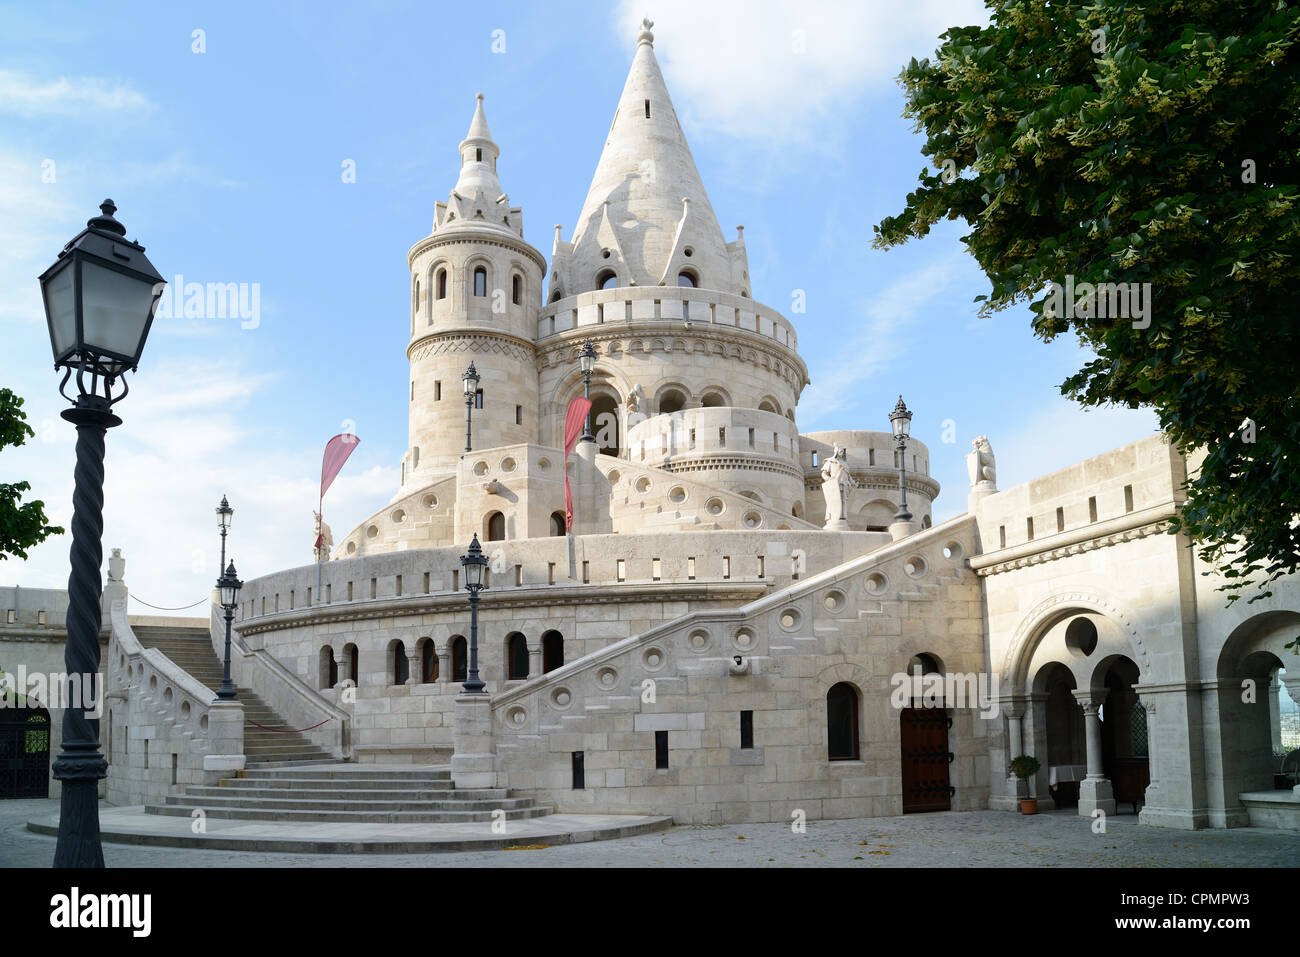 La grande tour de Bastion des pêcheurs sur la colline du château de Budapest (Hongrie) Banque D'Images